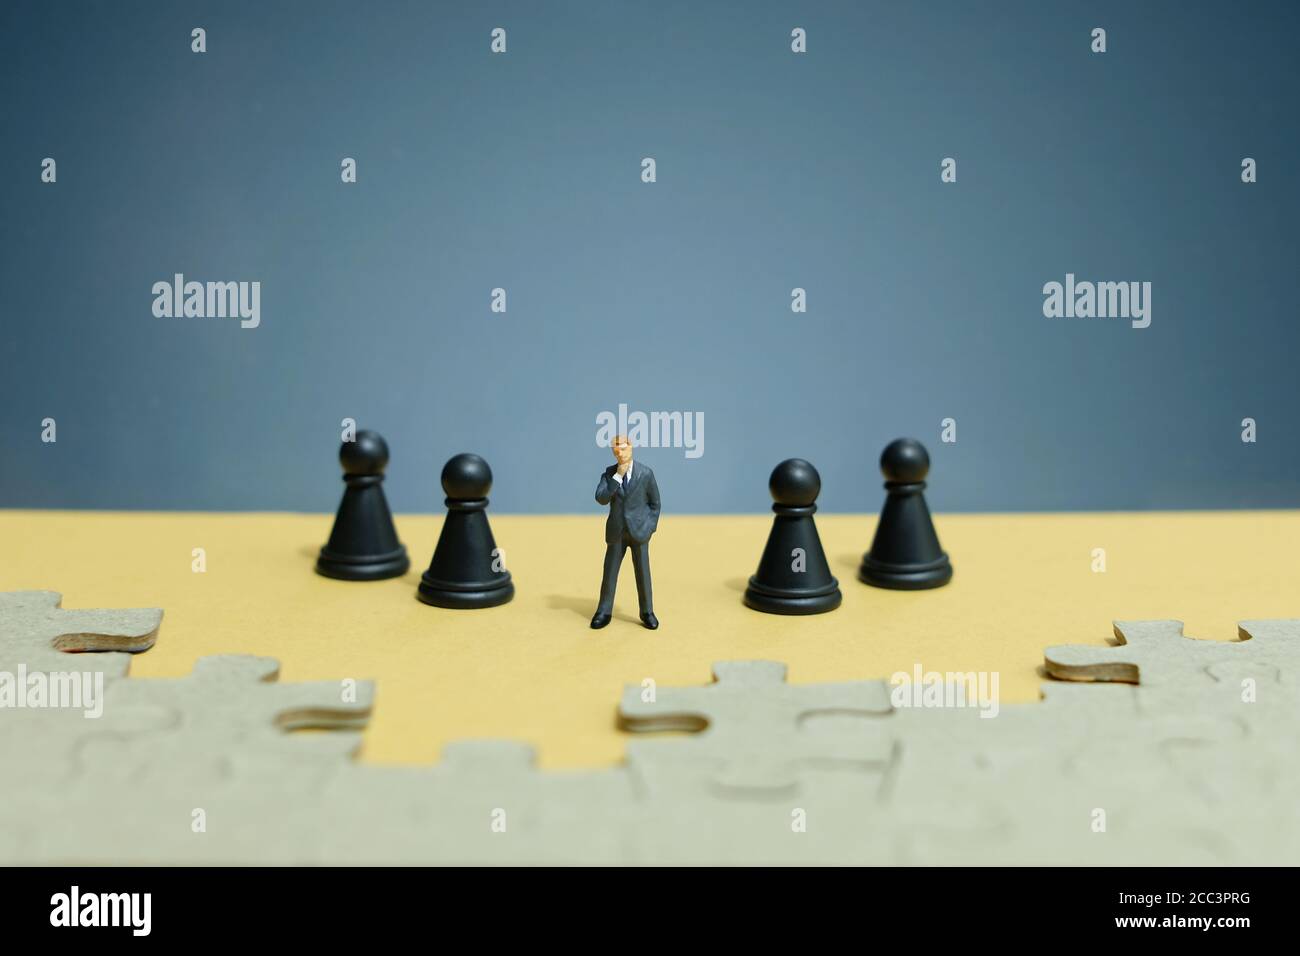 Foto concettuale strategia aziendale - miniatura di uomo d'affari in piedi il mezzo sulla linea dell'esercito degli scacchi con puzzle Foto Stock